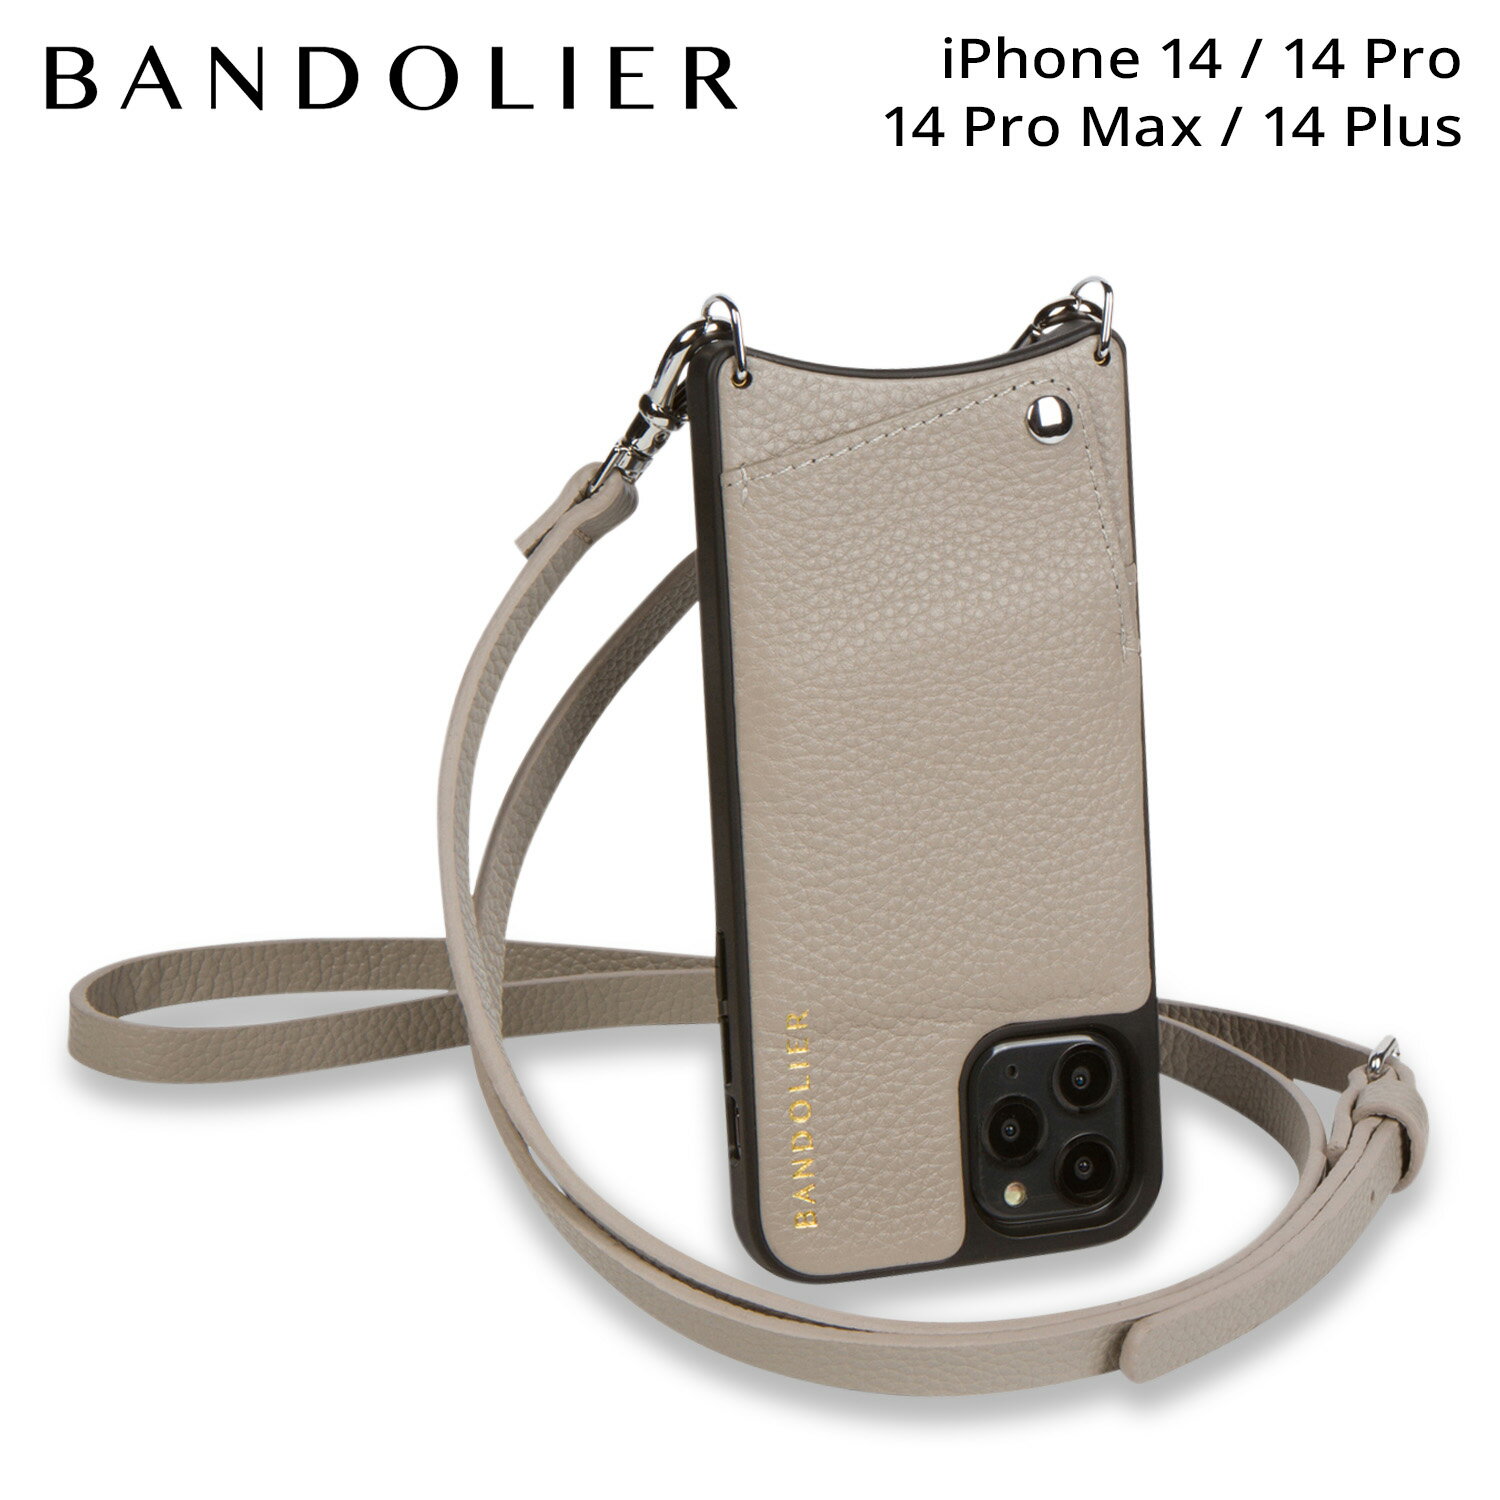 バンドリヤー BANDOLIER iPhone 14 14Pro iPhone 14 Pro Max iPhone 14 Plus スマホ ストラップ スマホショルダー ストラップ スマホケース 携帯 ショルダー アイフォン エマ グレージュ メンズ レディース EMMA GREIGE 10EMM